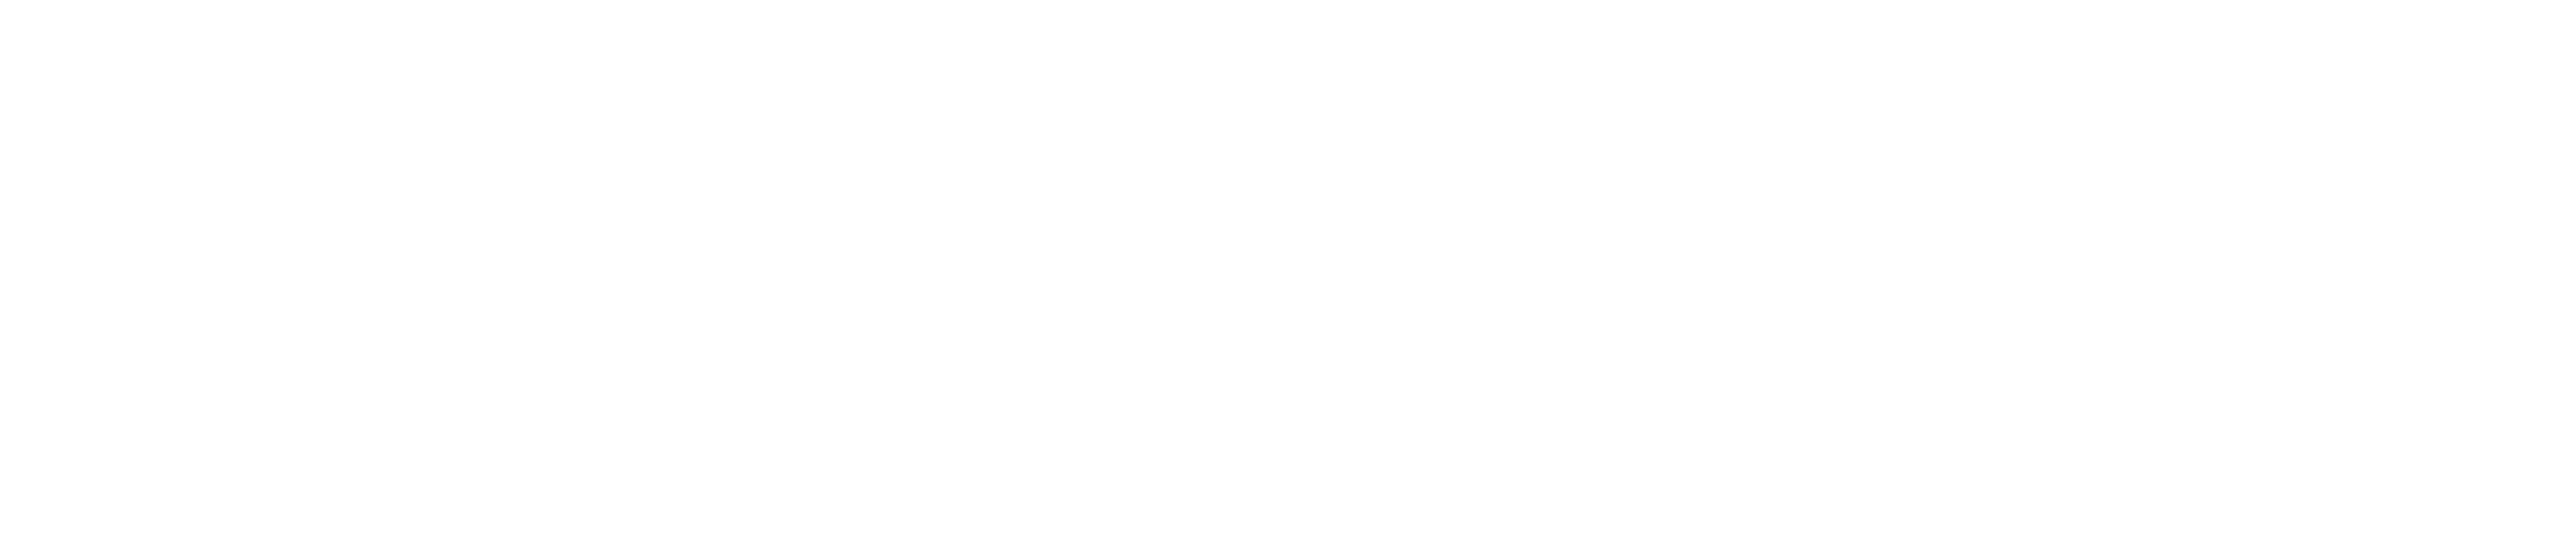 Pervasive Data Science Group, University of Helsinki